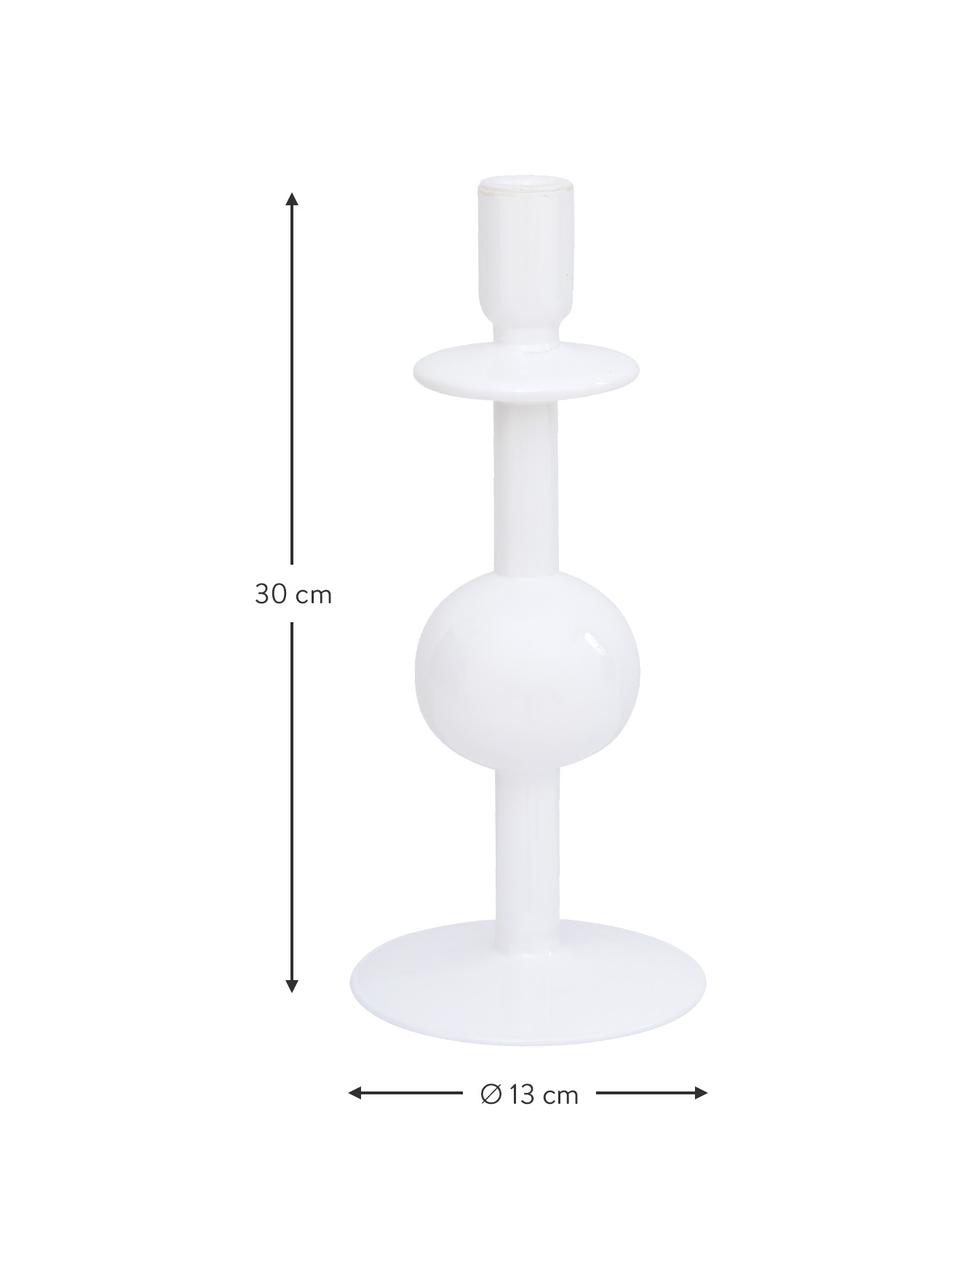 Kandelaar Bulb van gerecycled glas, 2 stuks, Gerecycled glas, Wit, glanzend, Ø 13 x H 30 cm